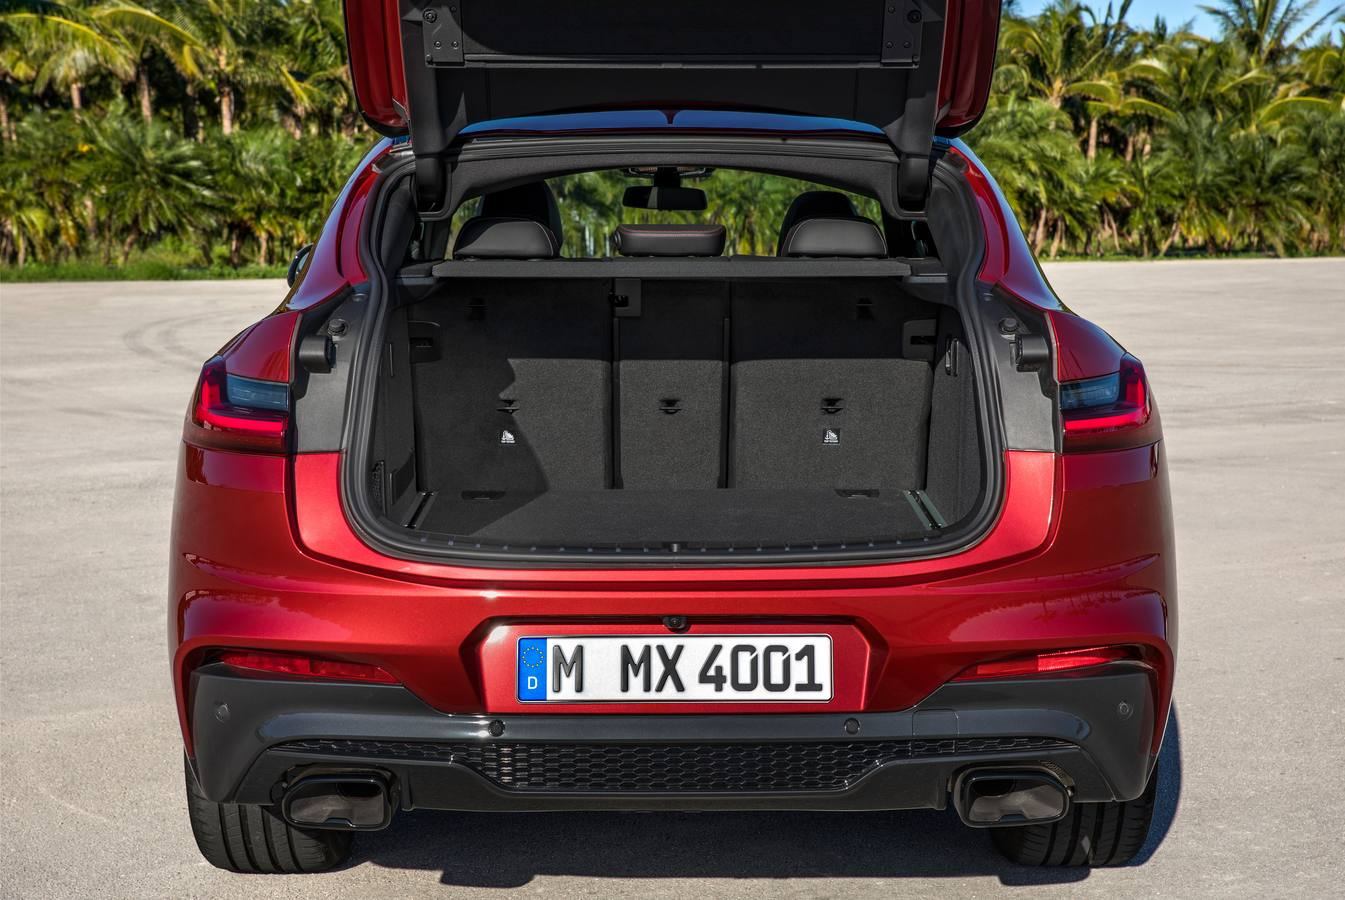 BMW renueva el X4. El nuevo modelo aporta una dinámica de conducción mejorada, un diseño que acentúa el carácter deportivo y añade sistemas de asistencia de última generación y tecnologías de conectividad.